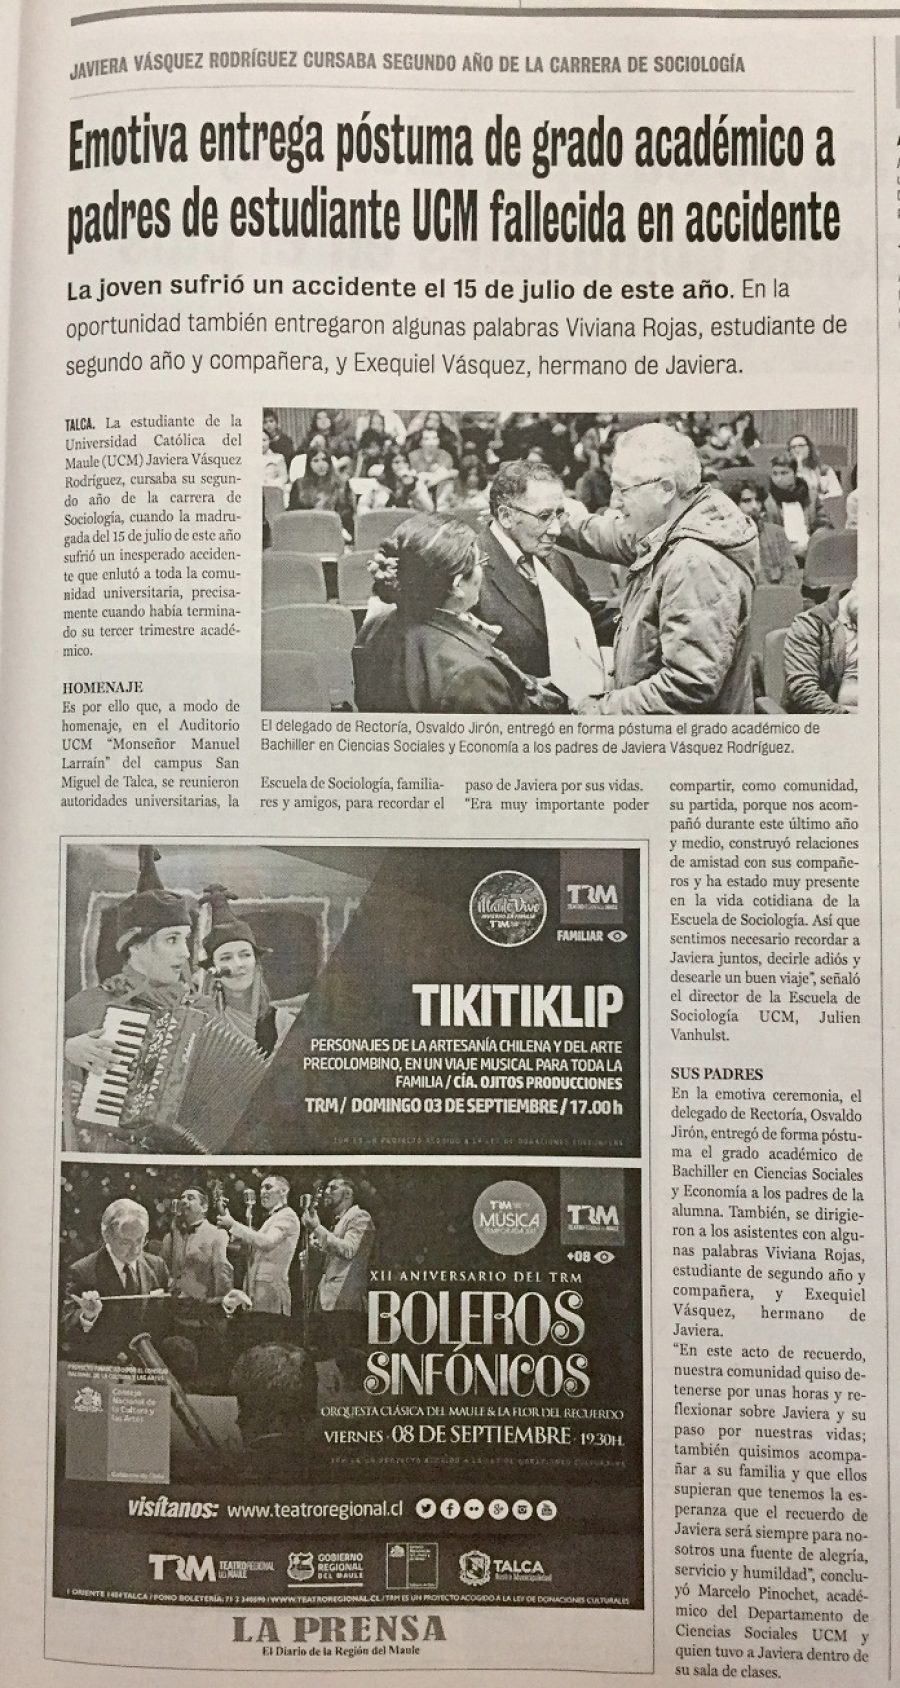 28 de agosto en Diario La Prensa: “Emotiva entrega póstuma de grado académico a padres de estudiantes UCM fallecida en accidente”